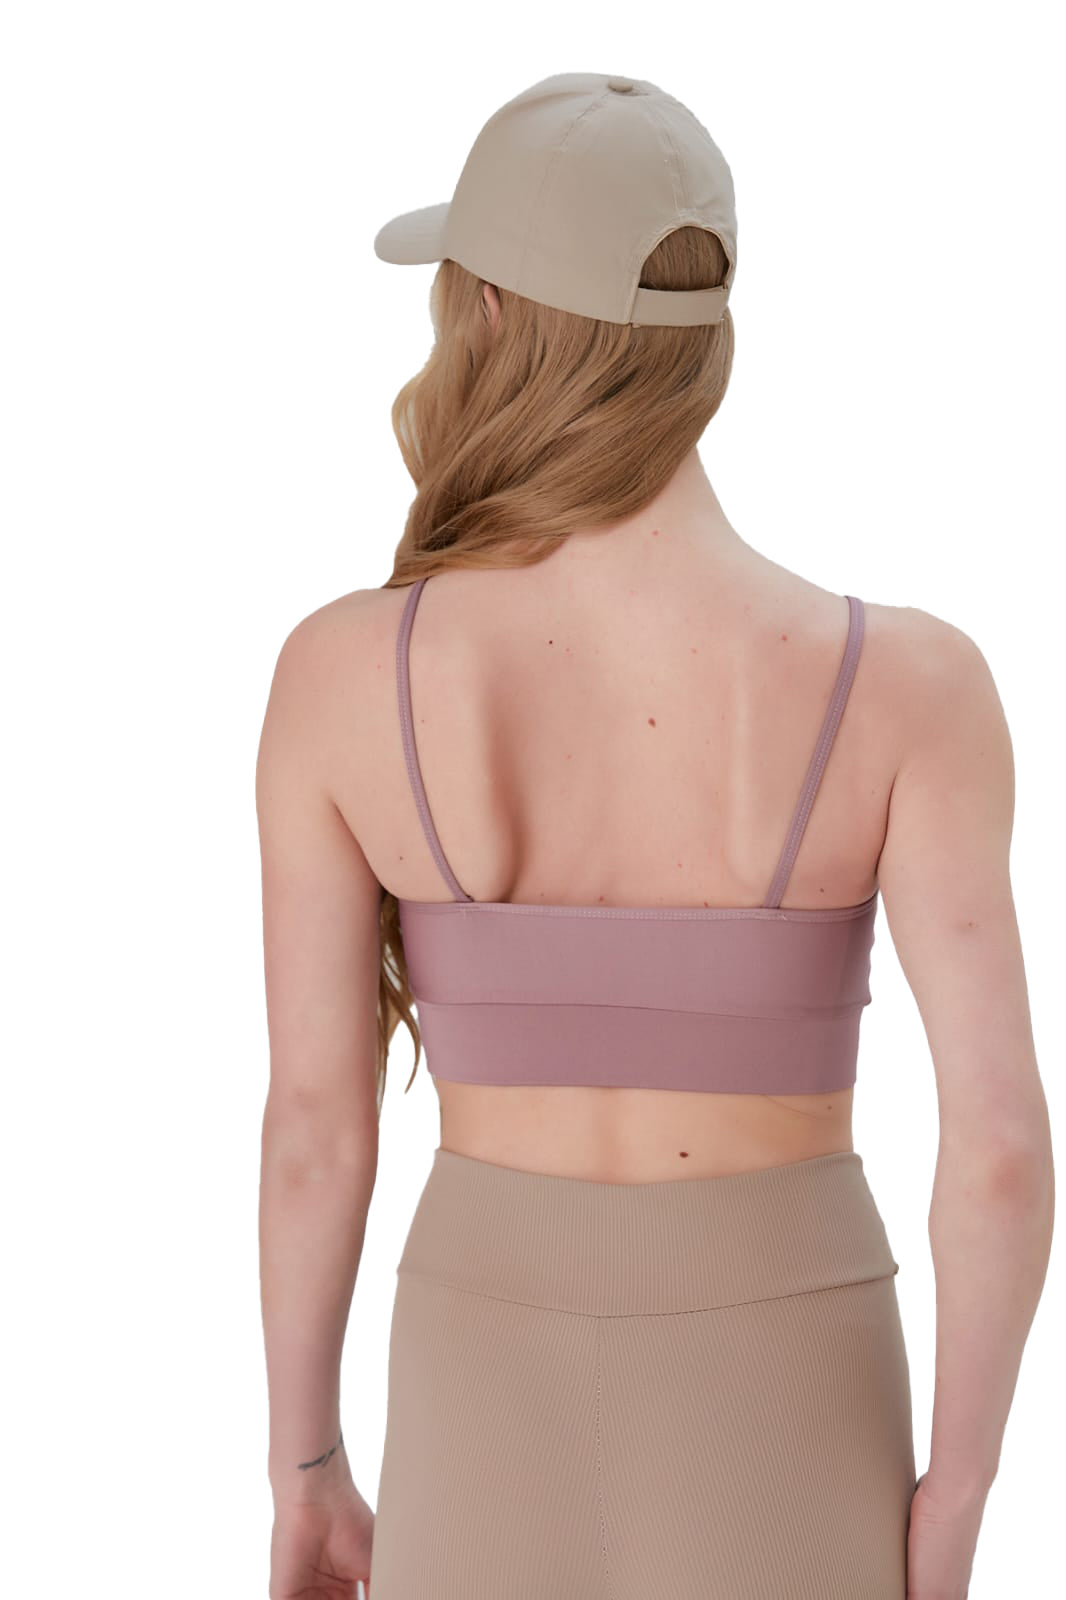 Padded Ladies Workout Wear, Crisscross Front Plunge Neck Top - NEW ARRIVALS! - Wear Sierra